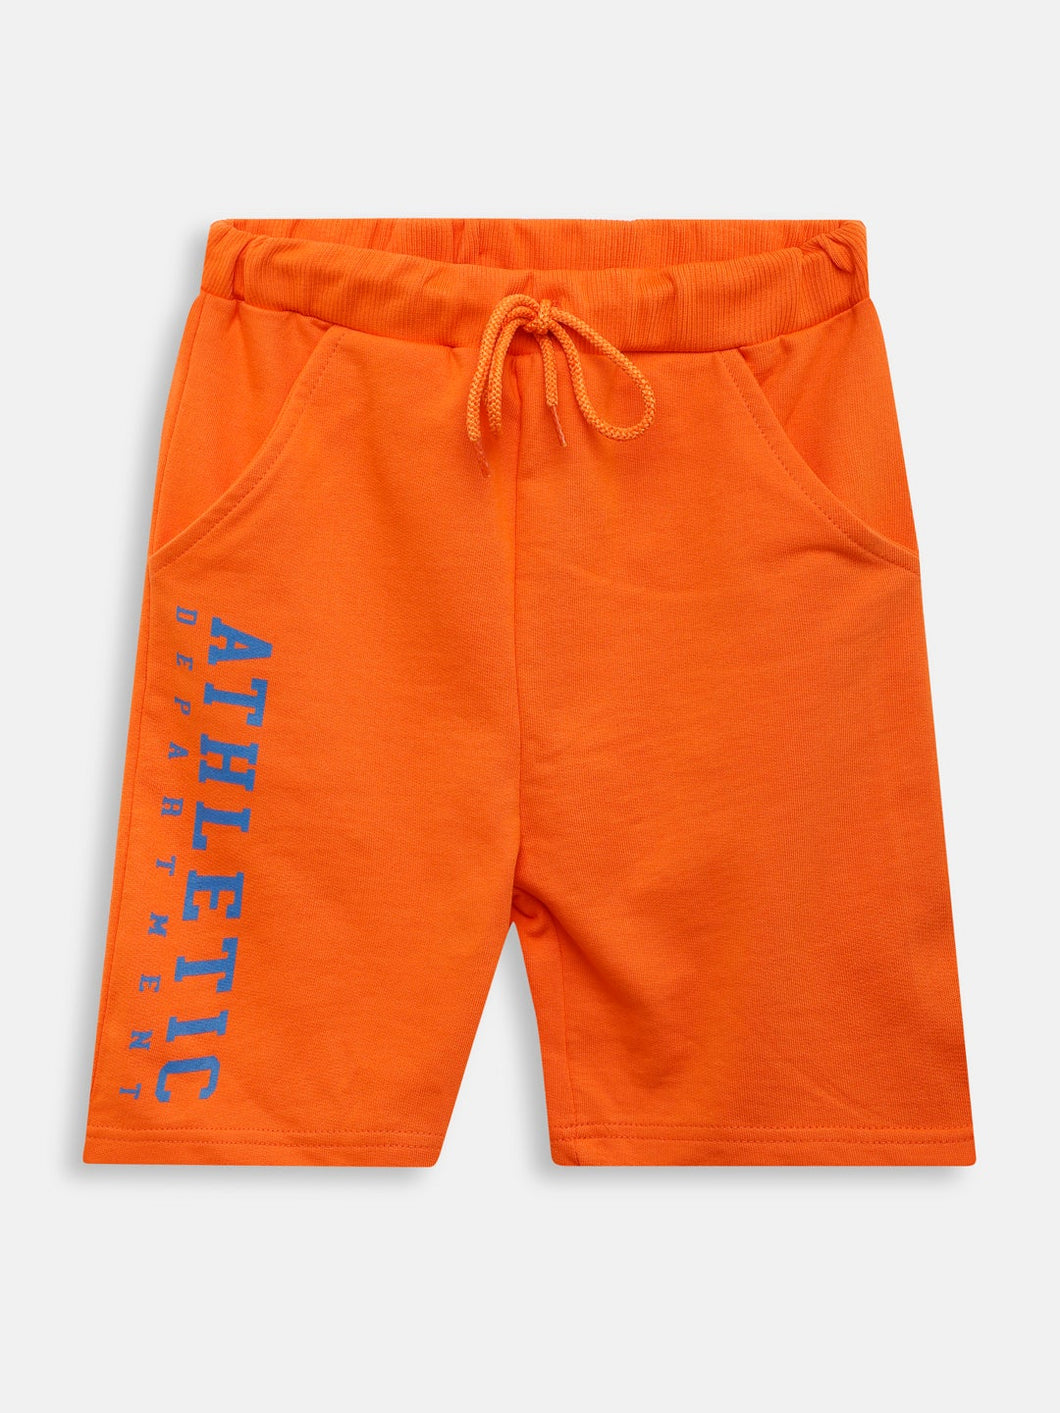 Boys Shorts (Style-OTB211108) Orange